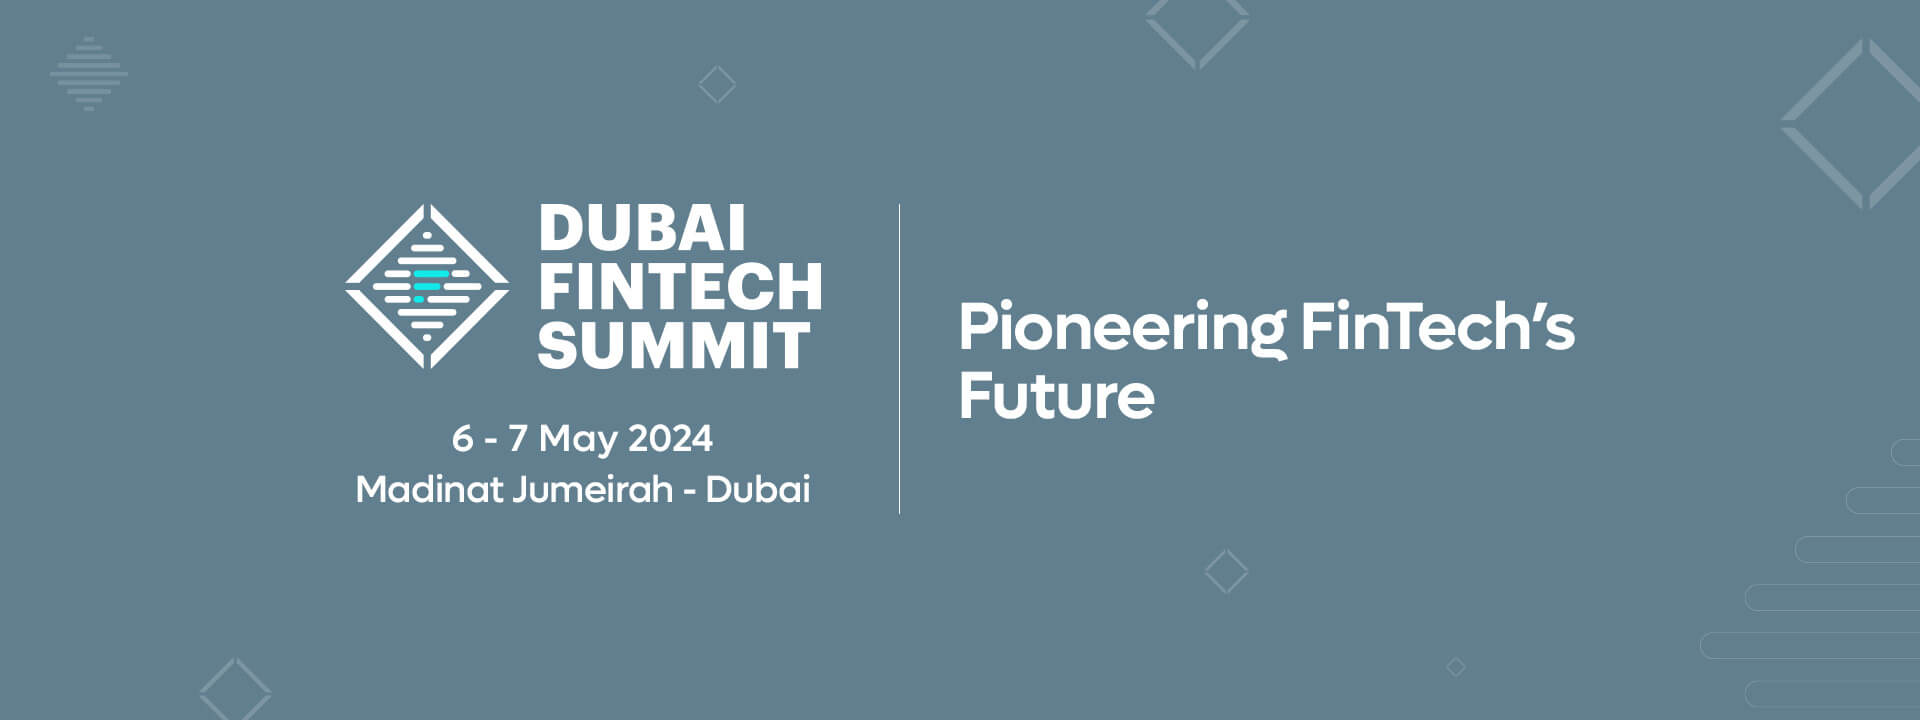 Dubai FinTech Summit 2024 Dubai FinTech Summit